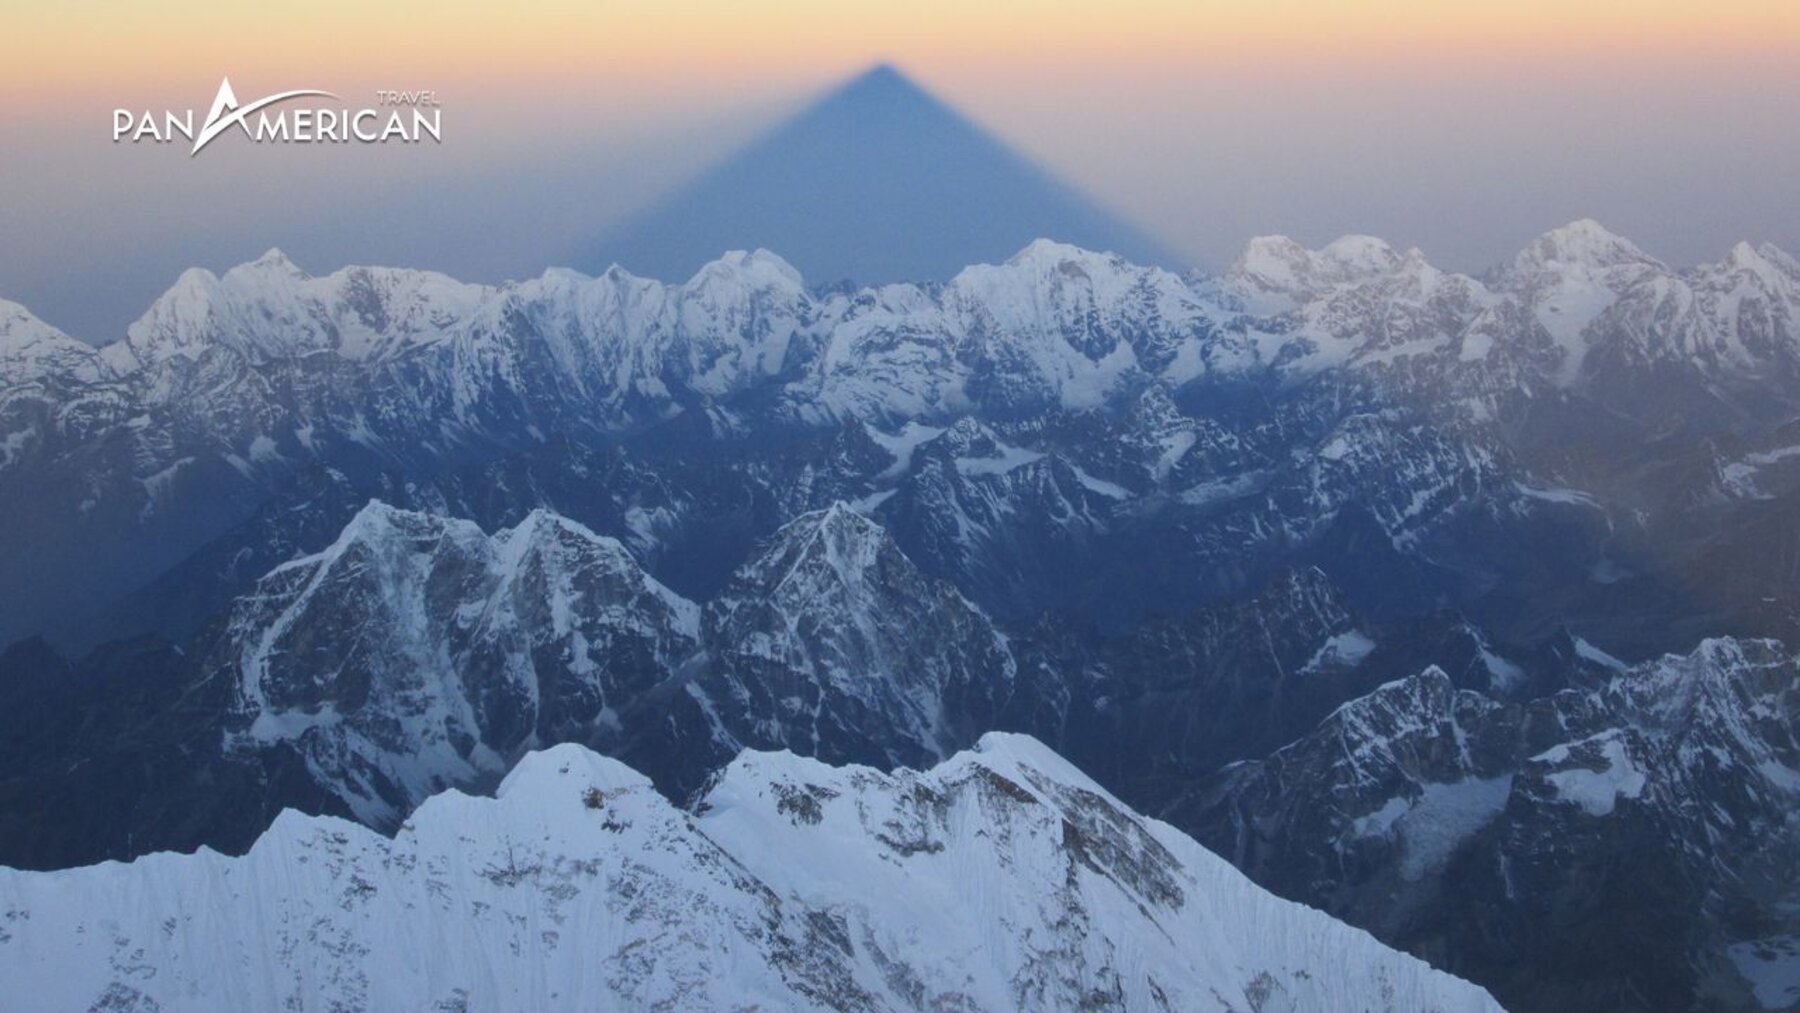 Đỉnh núi Everest ở đâu? Chiêm ngưỡng vẻ đẹp toàn cảnh từ nóc nhà của thế giới - Gallery Image